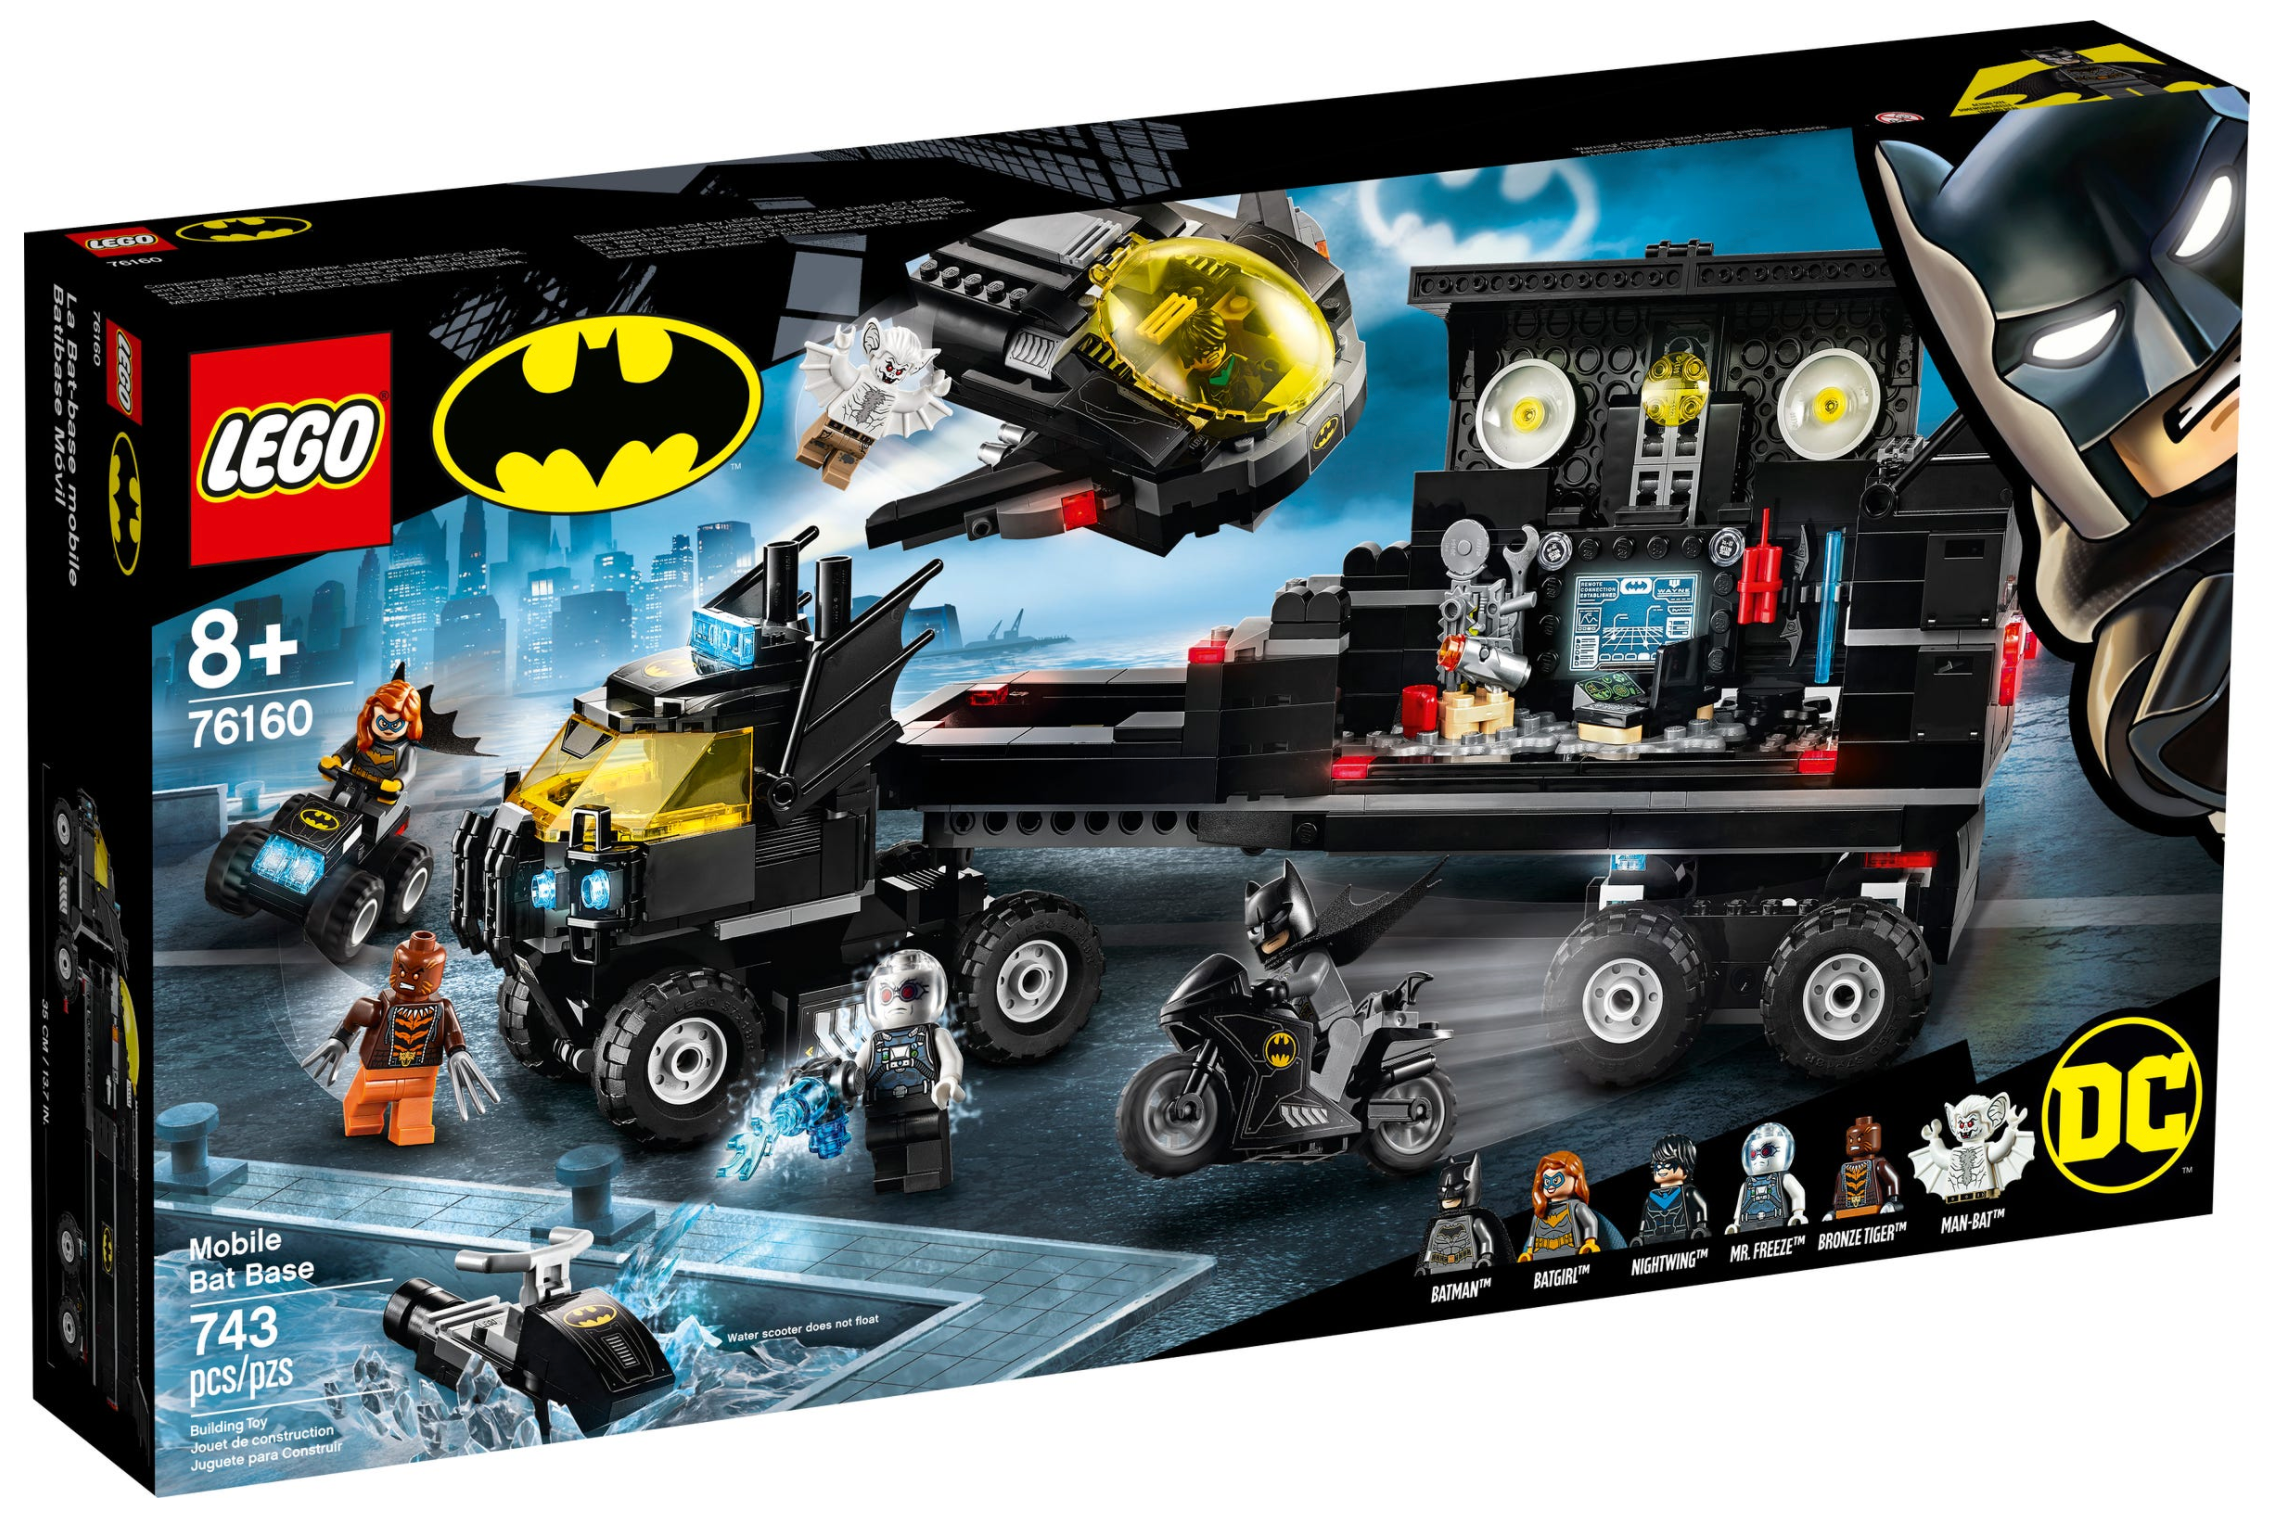 LEGO: Super Heroes - Mobile Bat Base